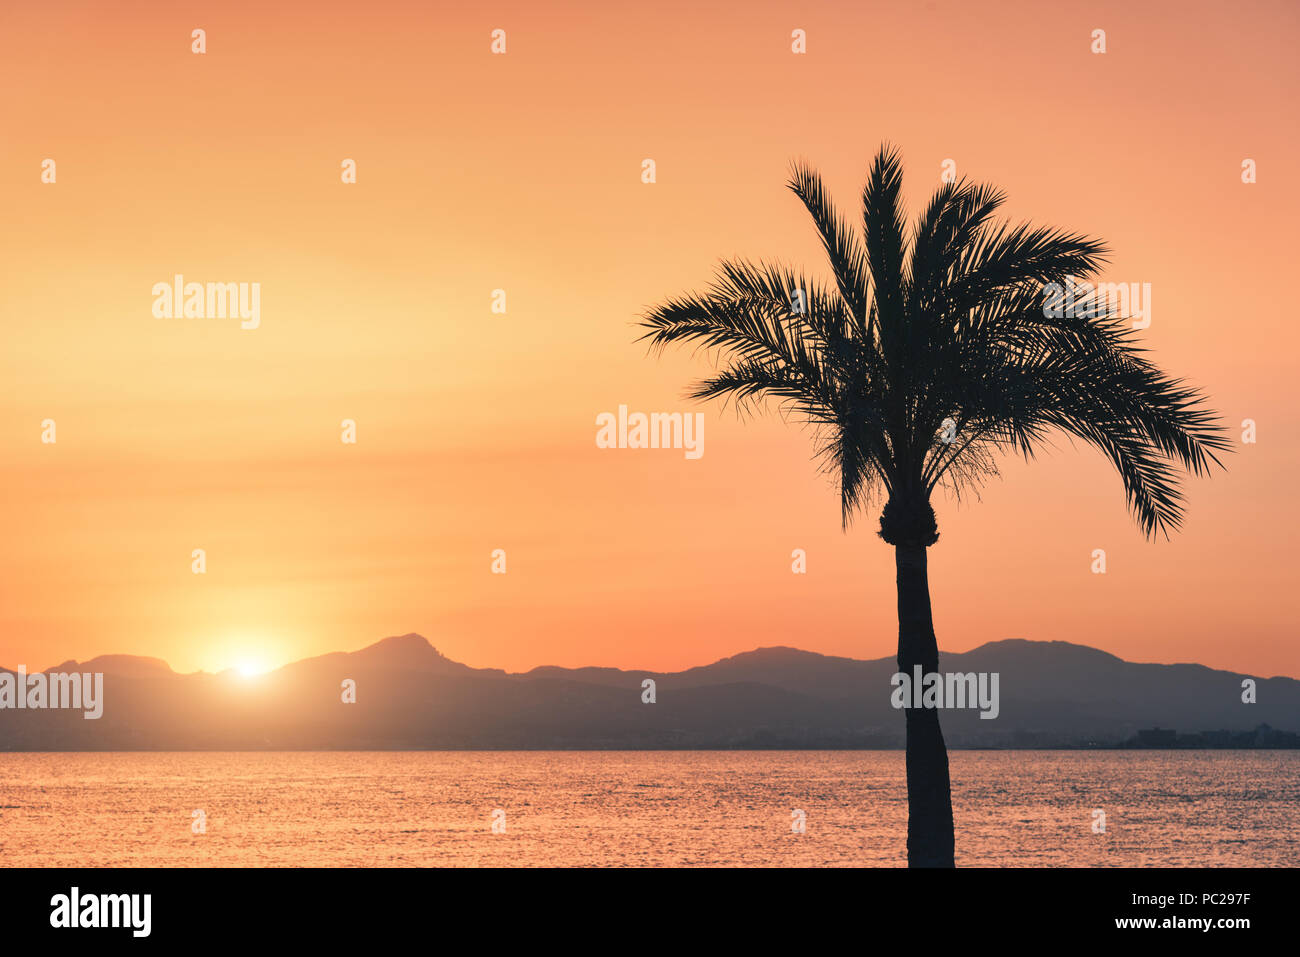 Sagome di alberi di palma contro il cielo colorato al tramonto. Paesaggio tropicale con palme sulla spiaggia di sabbia, mare e sole in oro in serata in summe Foto Stock